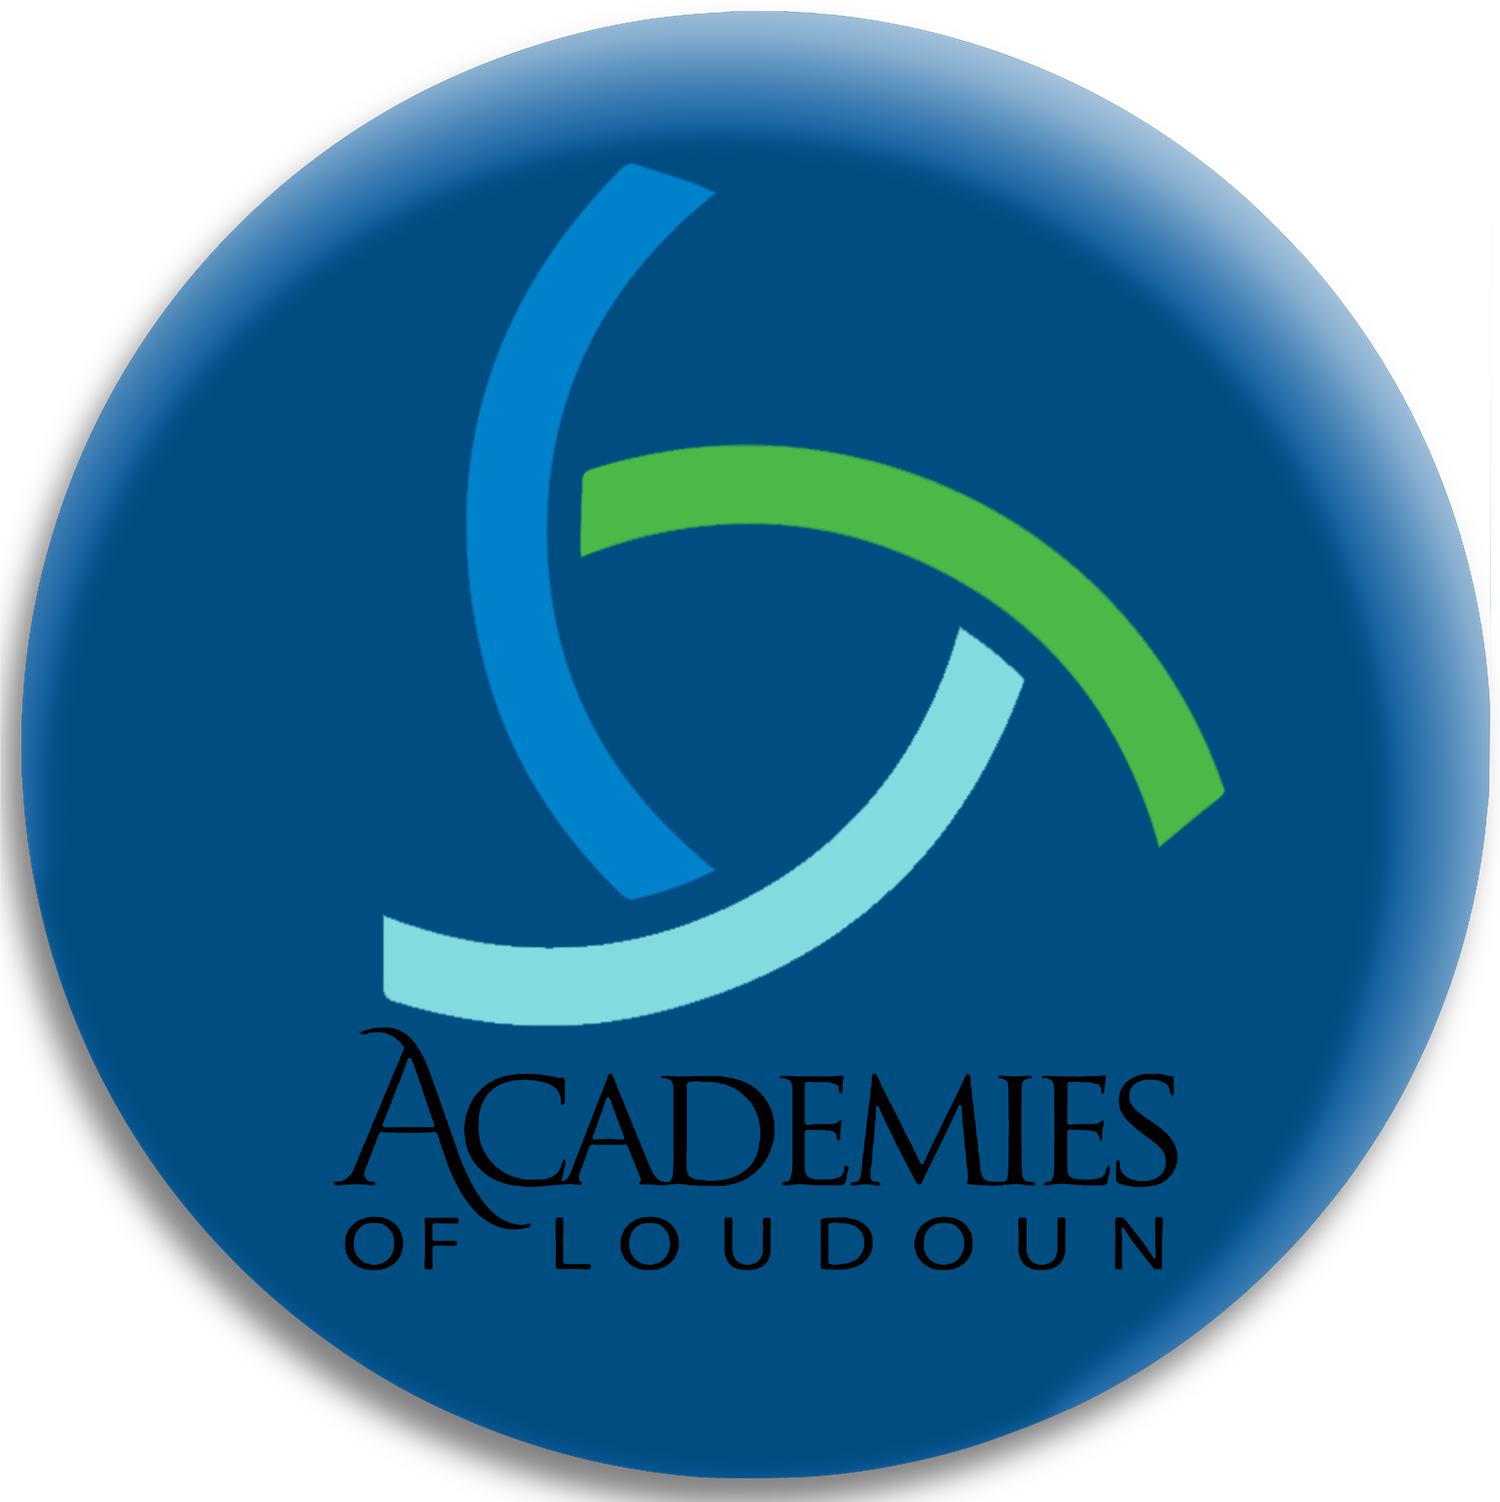 Academies of Loudoun logo